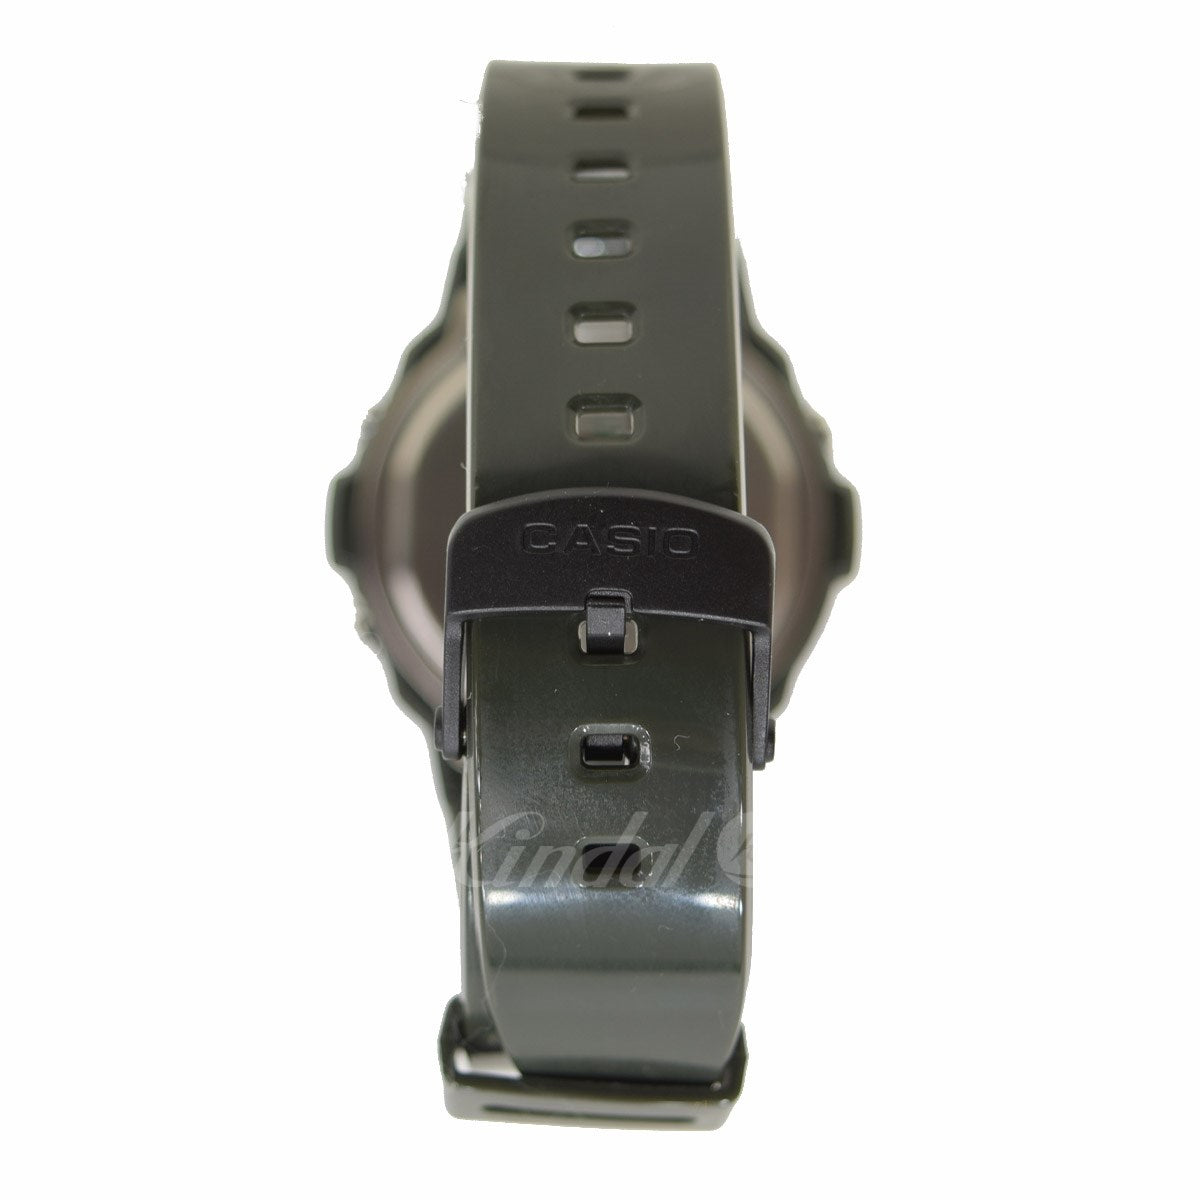 スタンダードデジタル 腕時計 W-214HC